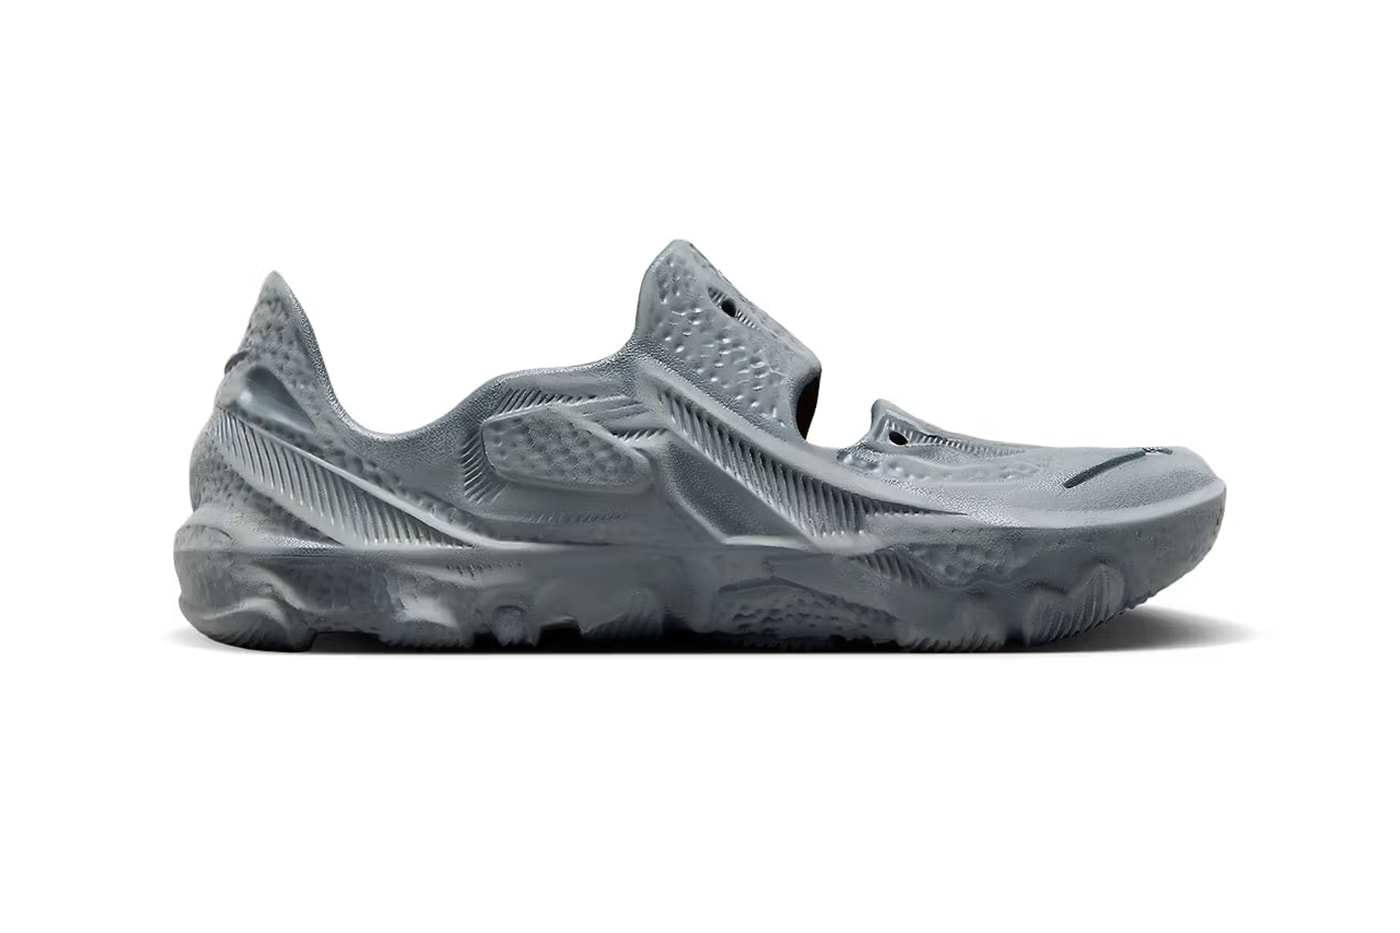 Nike ISPA Universal Gray DM0886-001 Release Date | Hypebeast